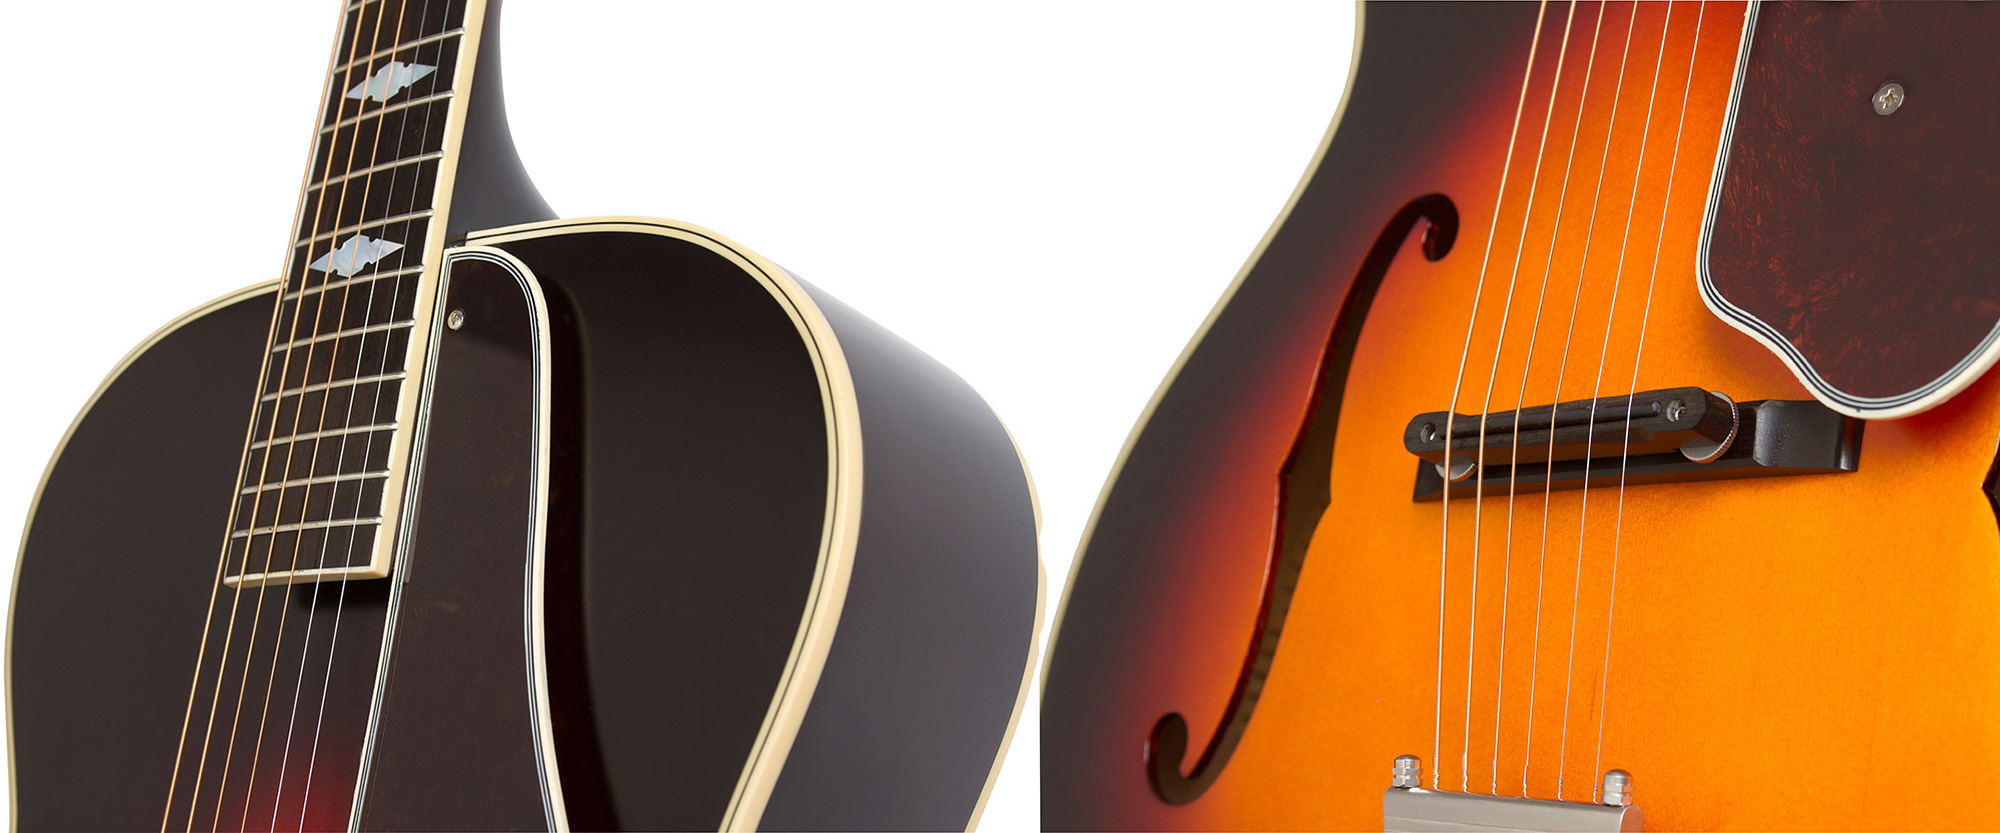 Epiphone De Luxe Classic Masterbilt Century Archtop Epicea Erable 2016 - Vintage Sunburst - Electro acoustic guitar - Variation 3